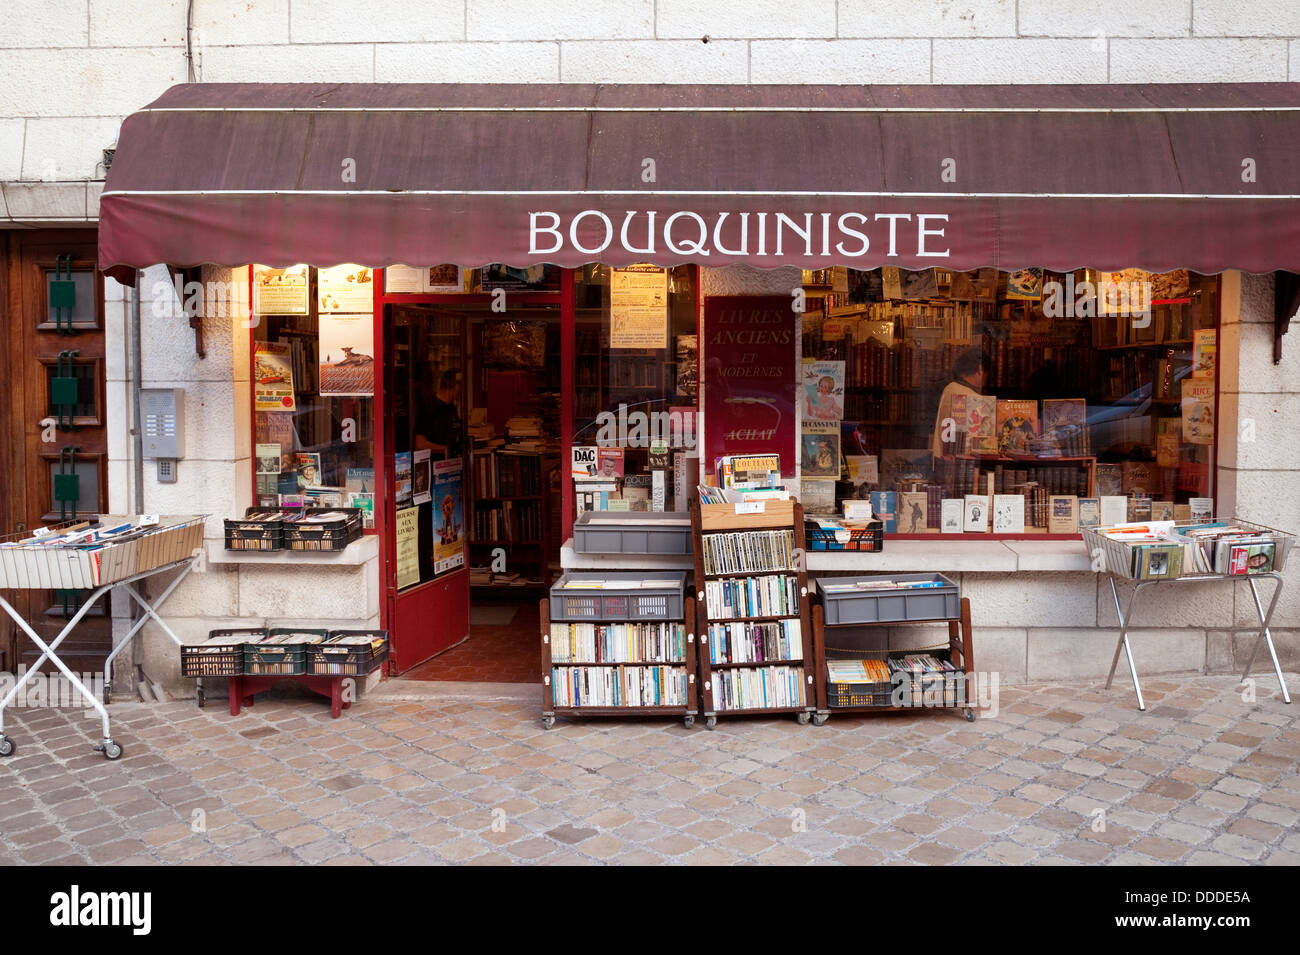 Una librería de segunda mano o Bouquiniste, Blois, Loire et Cher, Francia, Europa Foto de stock